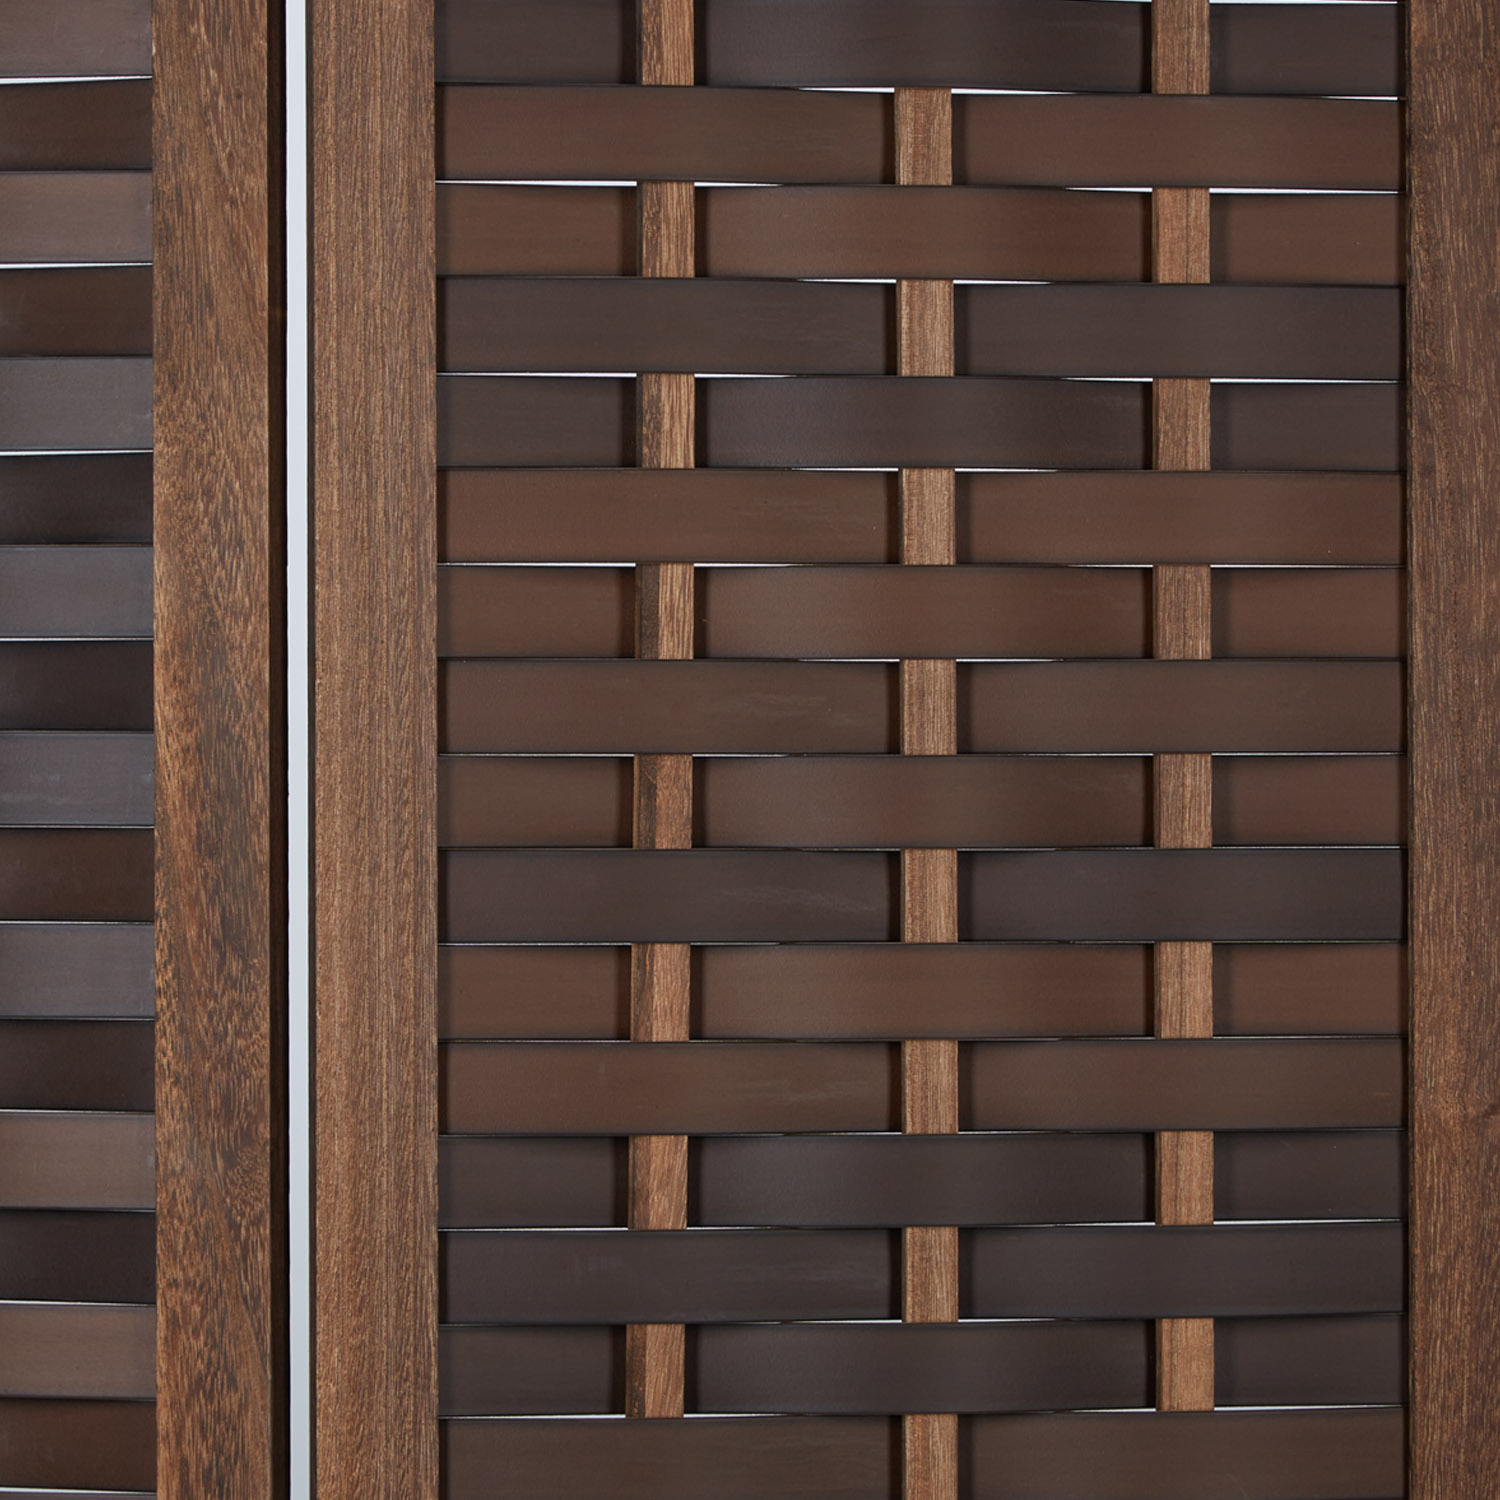 Paravent Raumteiler 3 teilig Weiß Natur Braun Holz Trennwand Sichtschutz Rattan Vintage